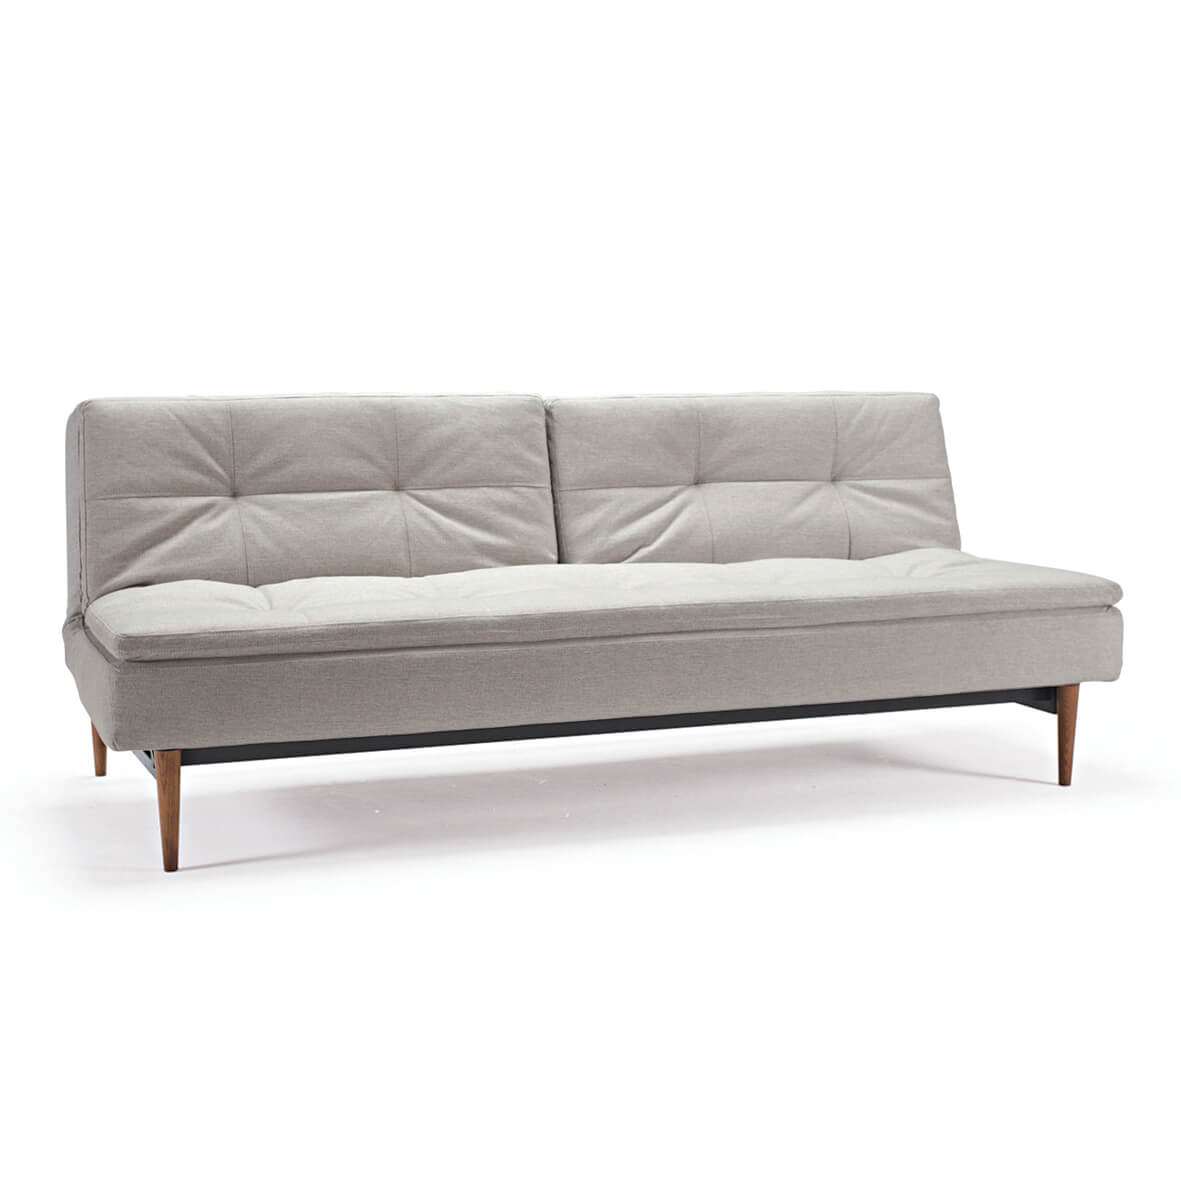 Convertible sofa bed futon convertible sofa